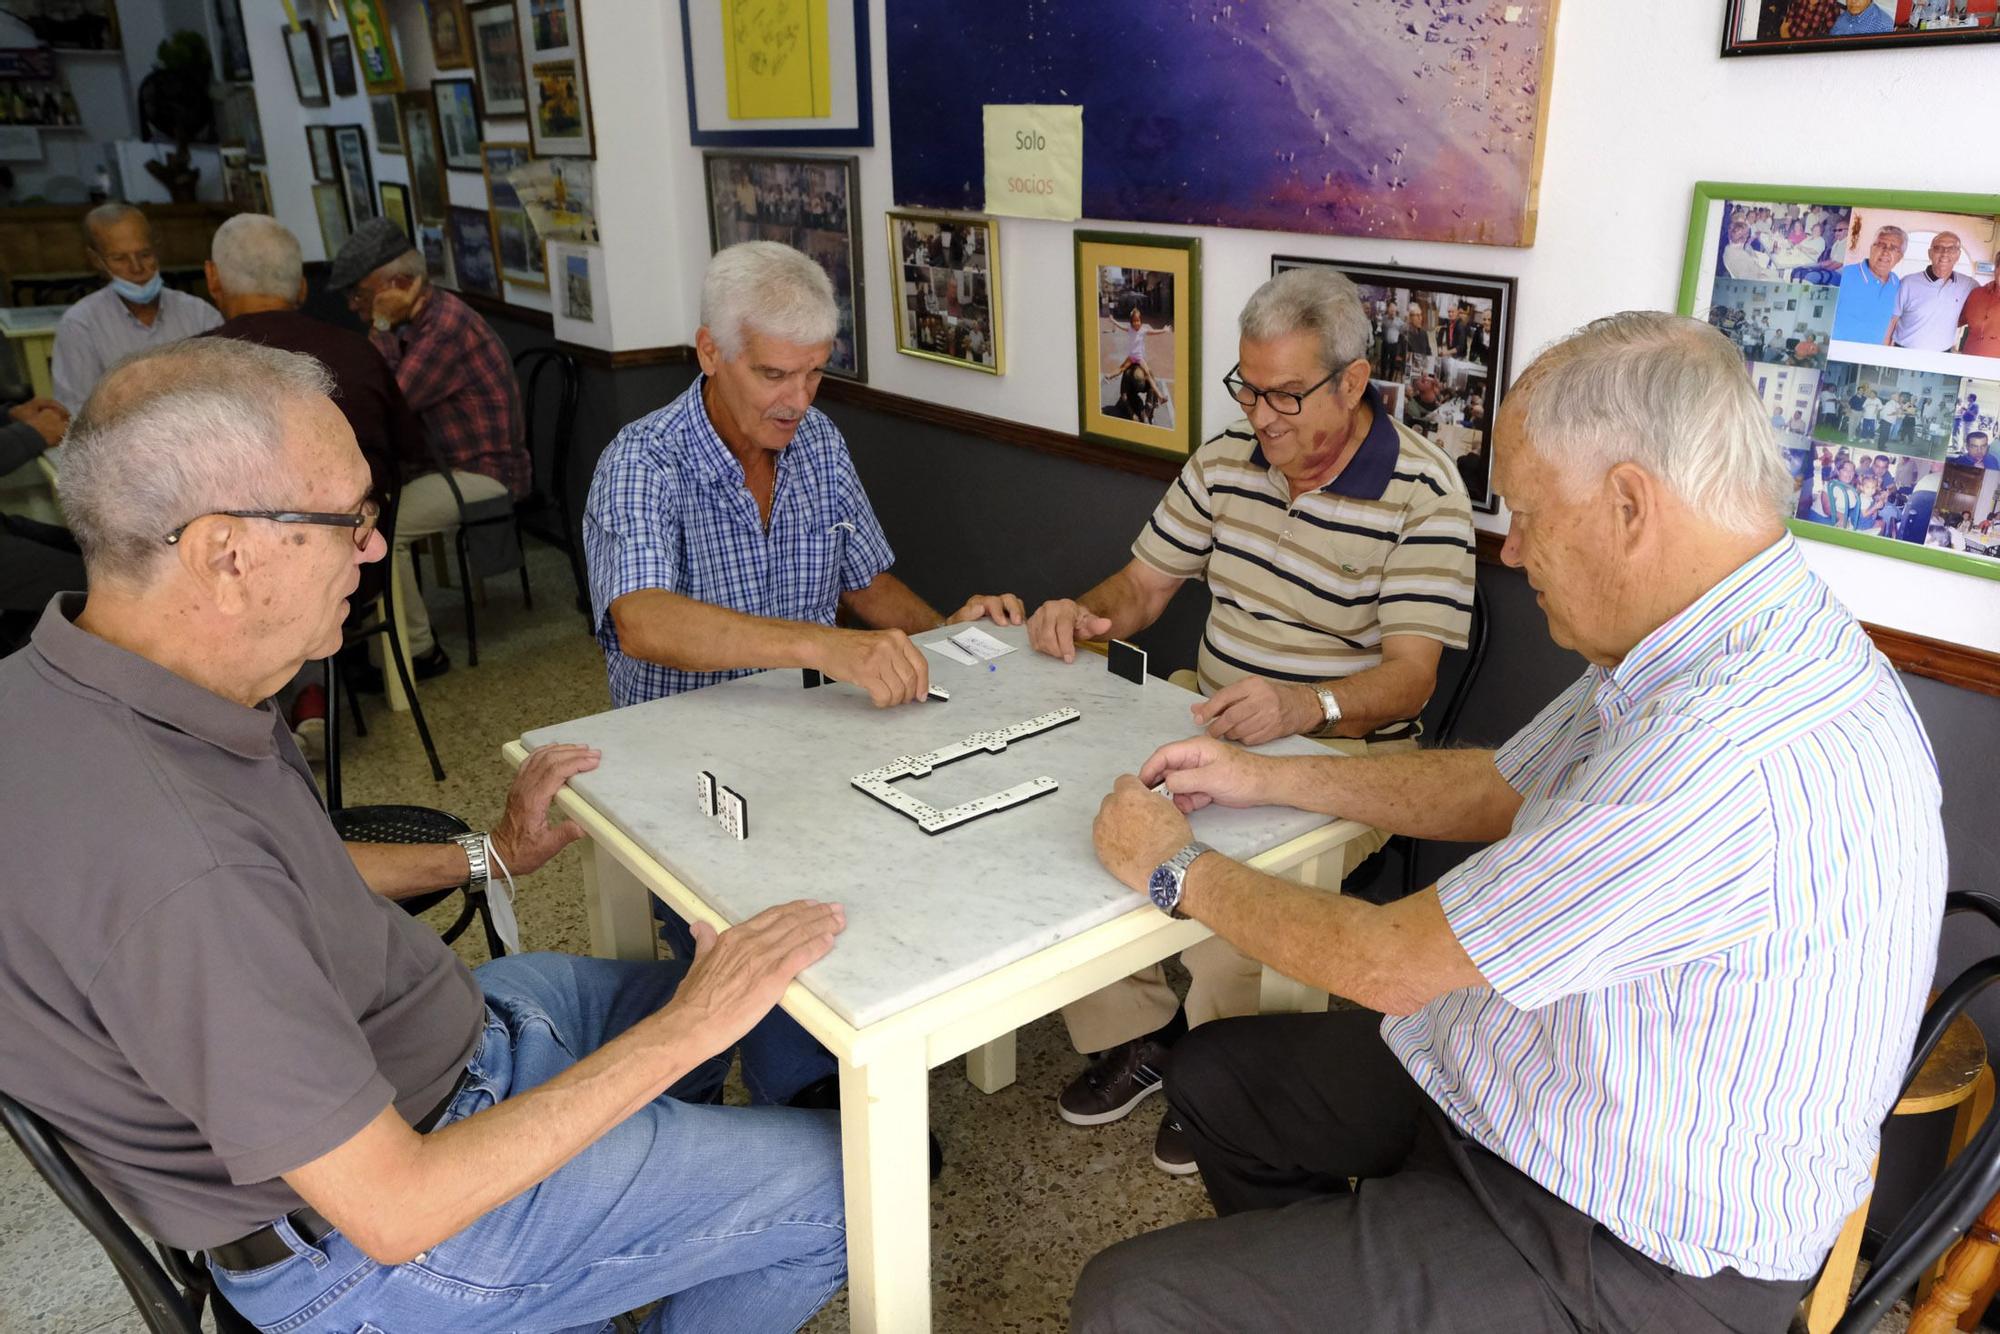 Ex de la UD (Germán Dévora, Paco Castellano, Páez y Hernández) se reúnen en un local para jugar cartas y contar batallas